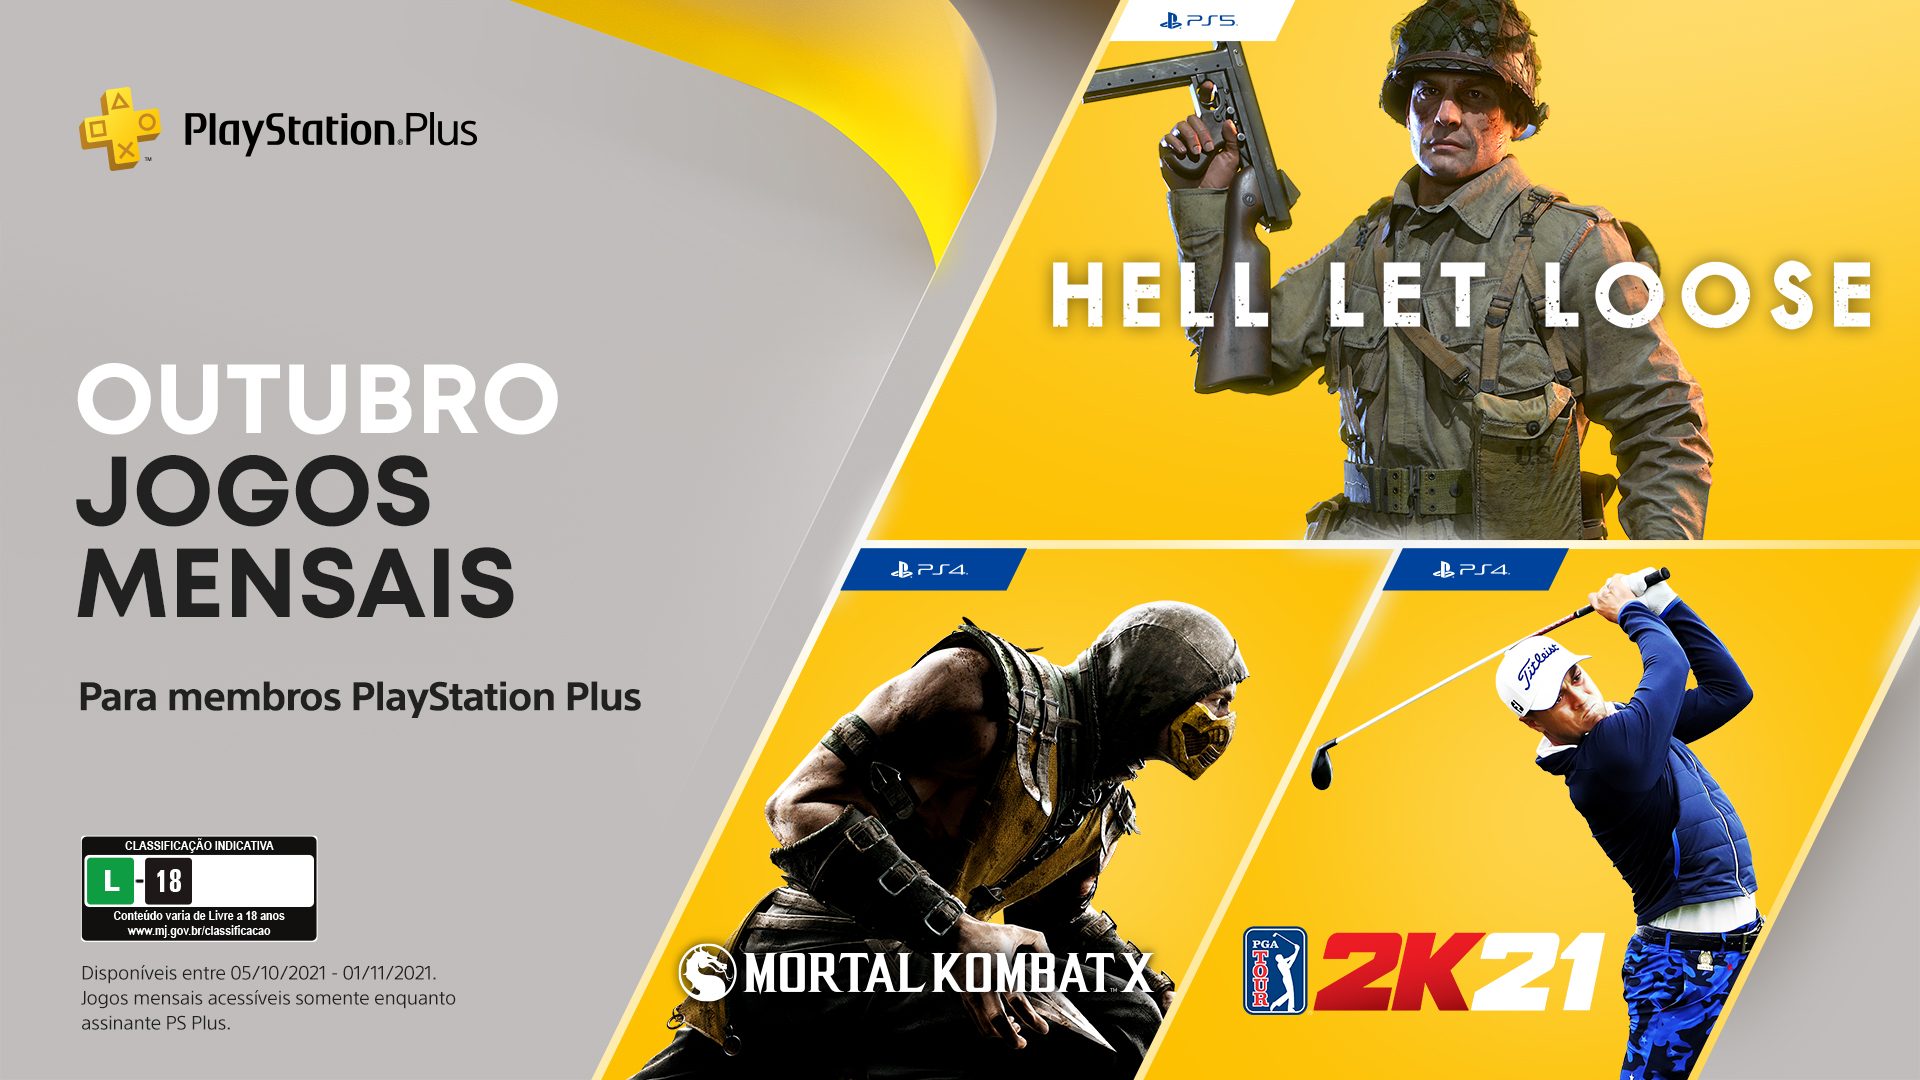 Jogos mensais de outubro para membros PlayStation Plus: The